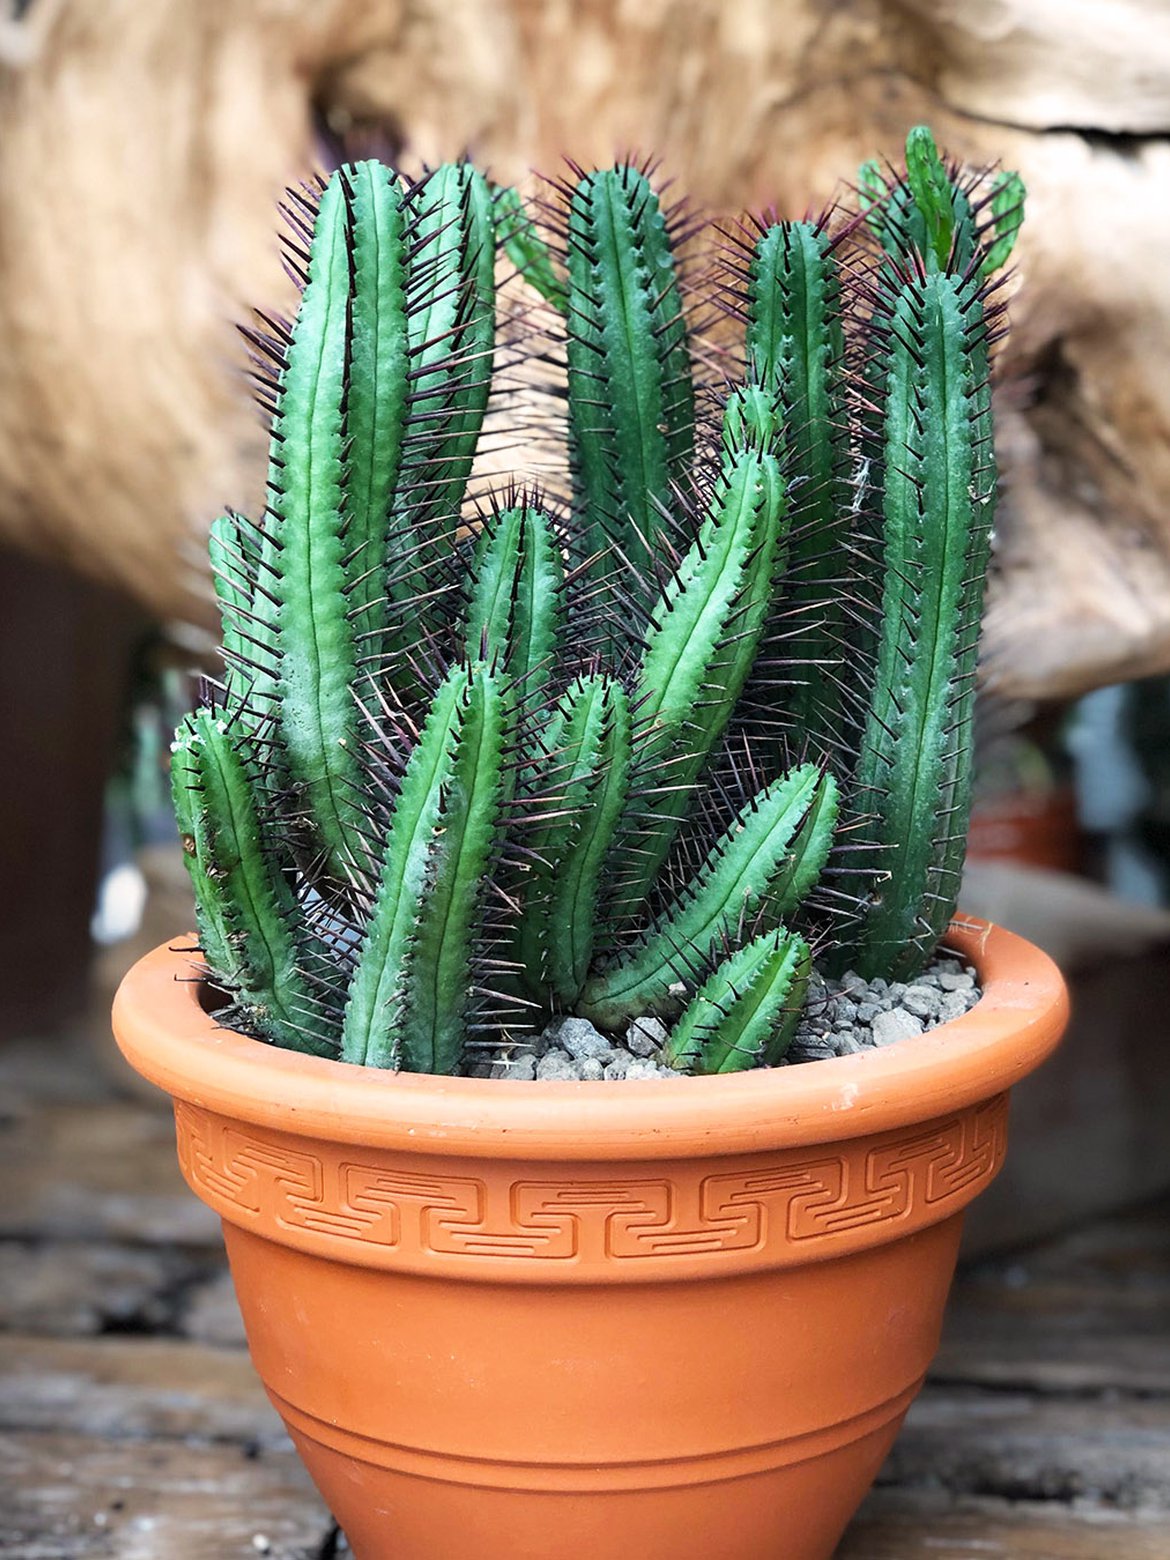 Cactus - Plantes exotique et végétaux chaud - Inspirations végétales du magazine Schilliger 2022